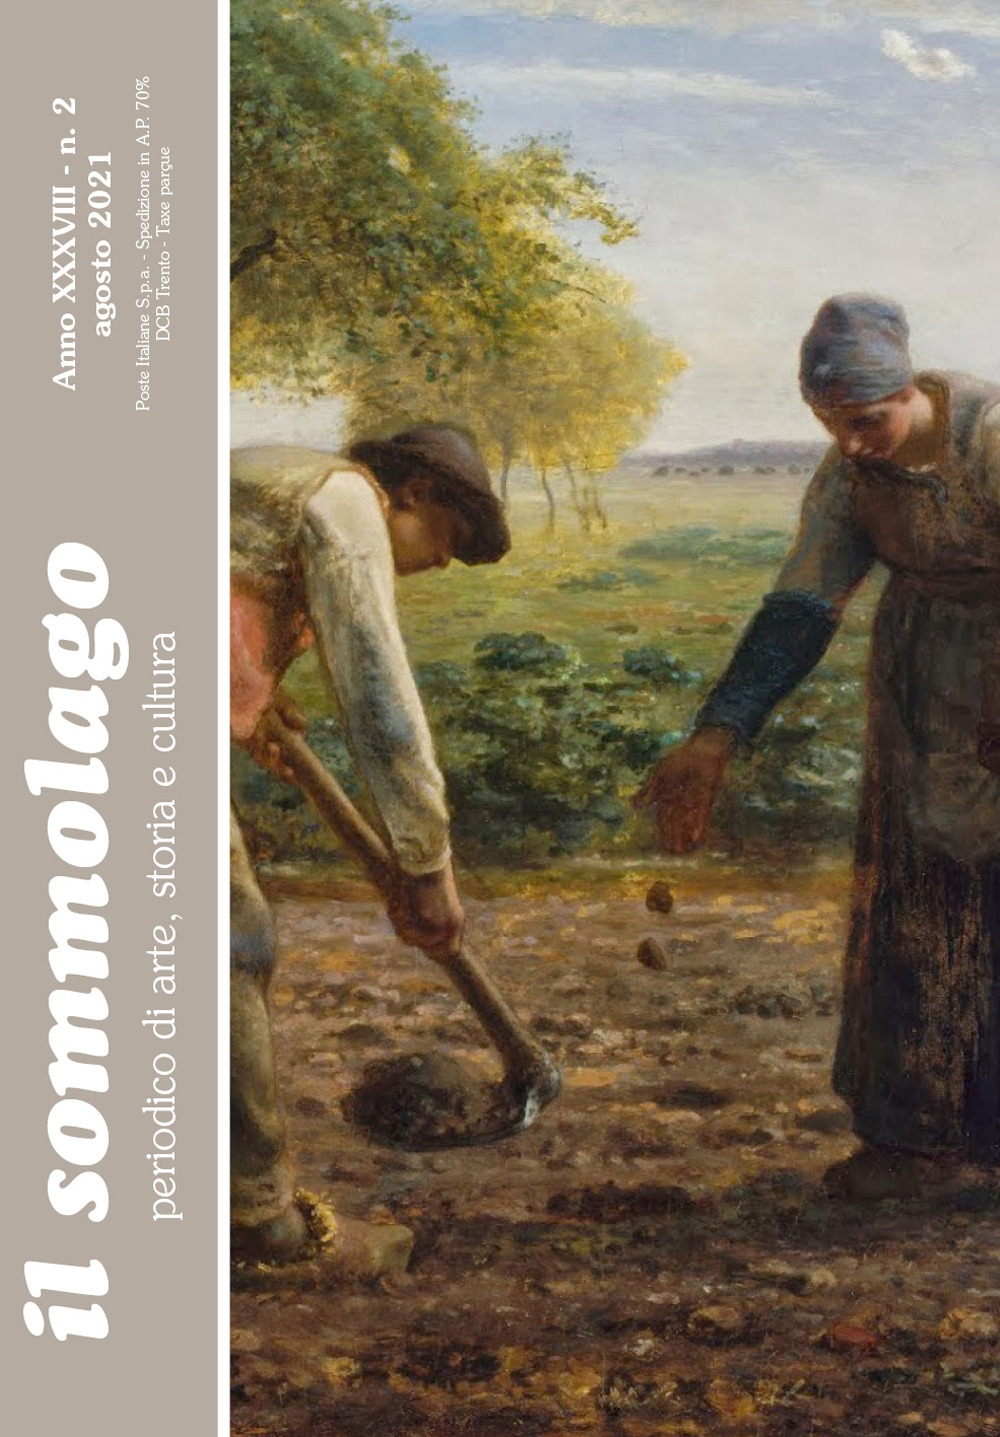 Il sommolago. Periodico di storia, arte e cultura (2021). Vol. 2